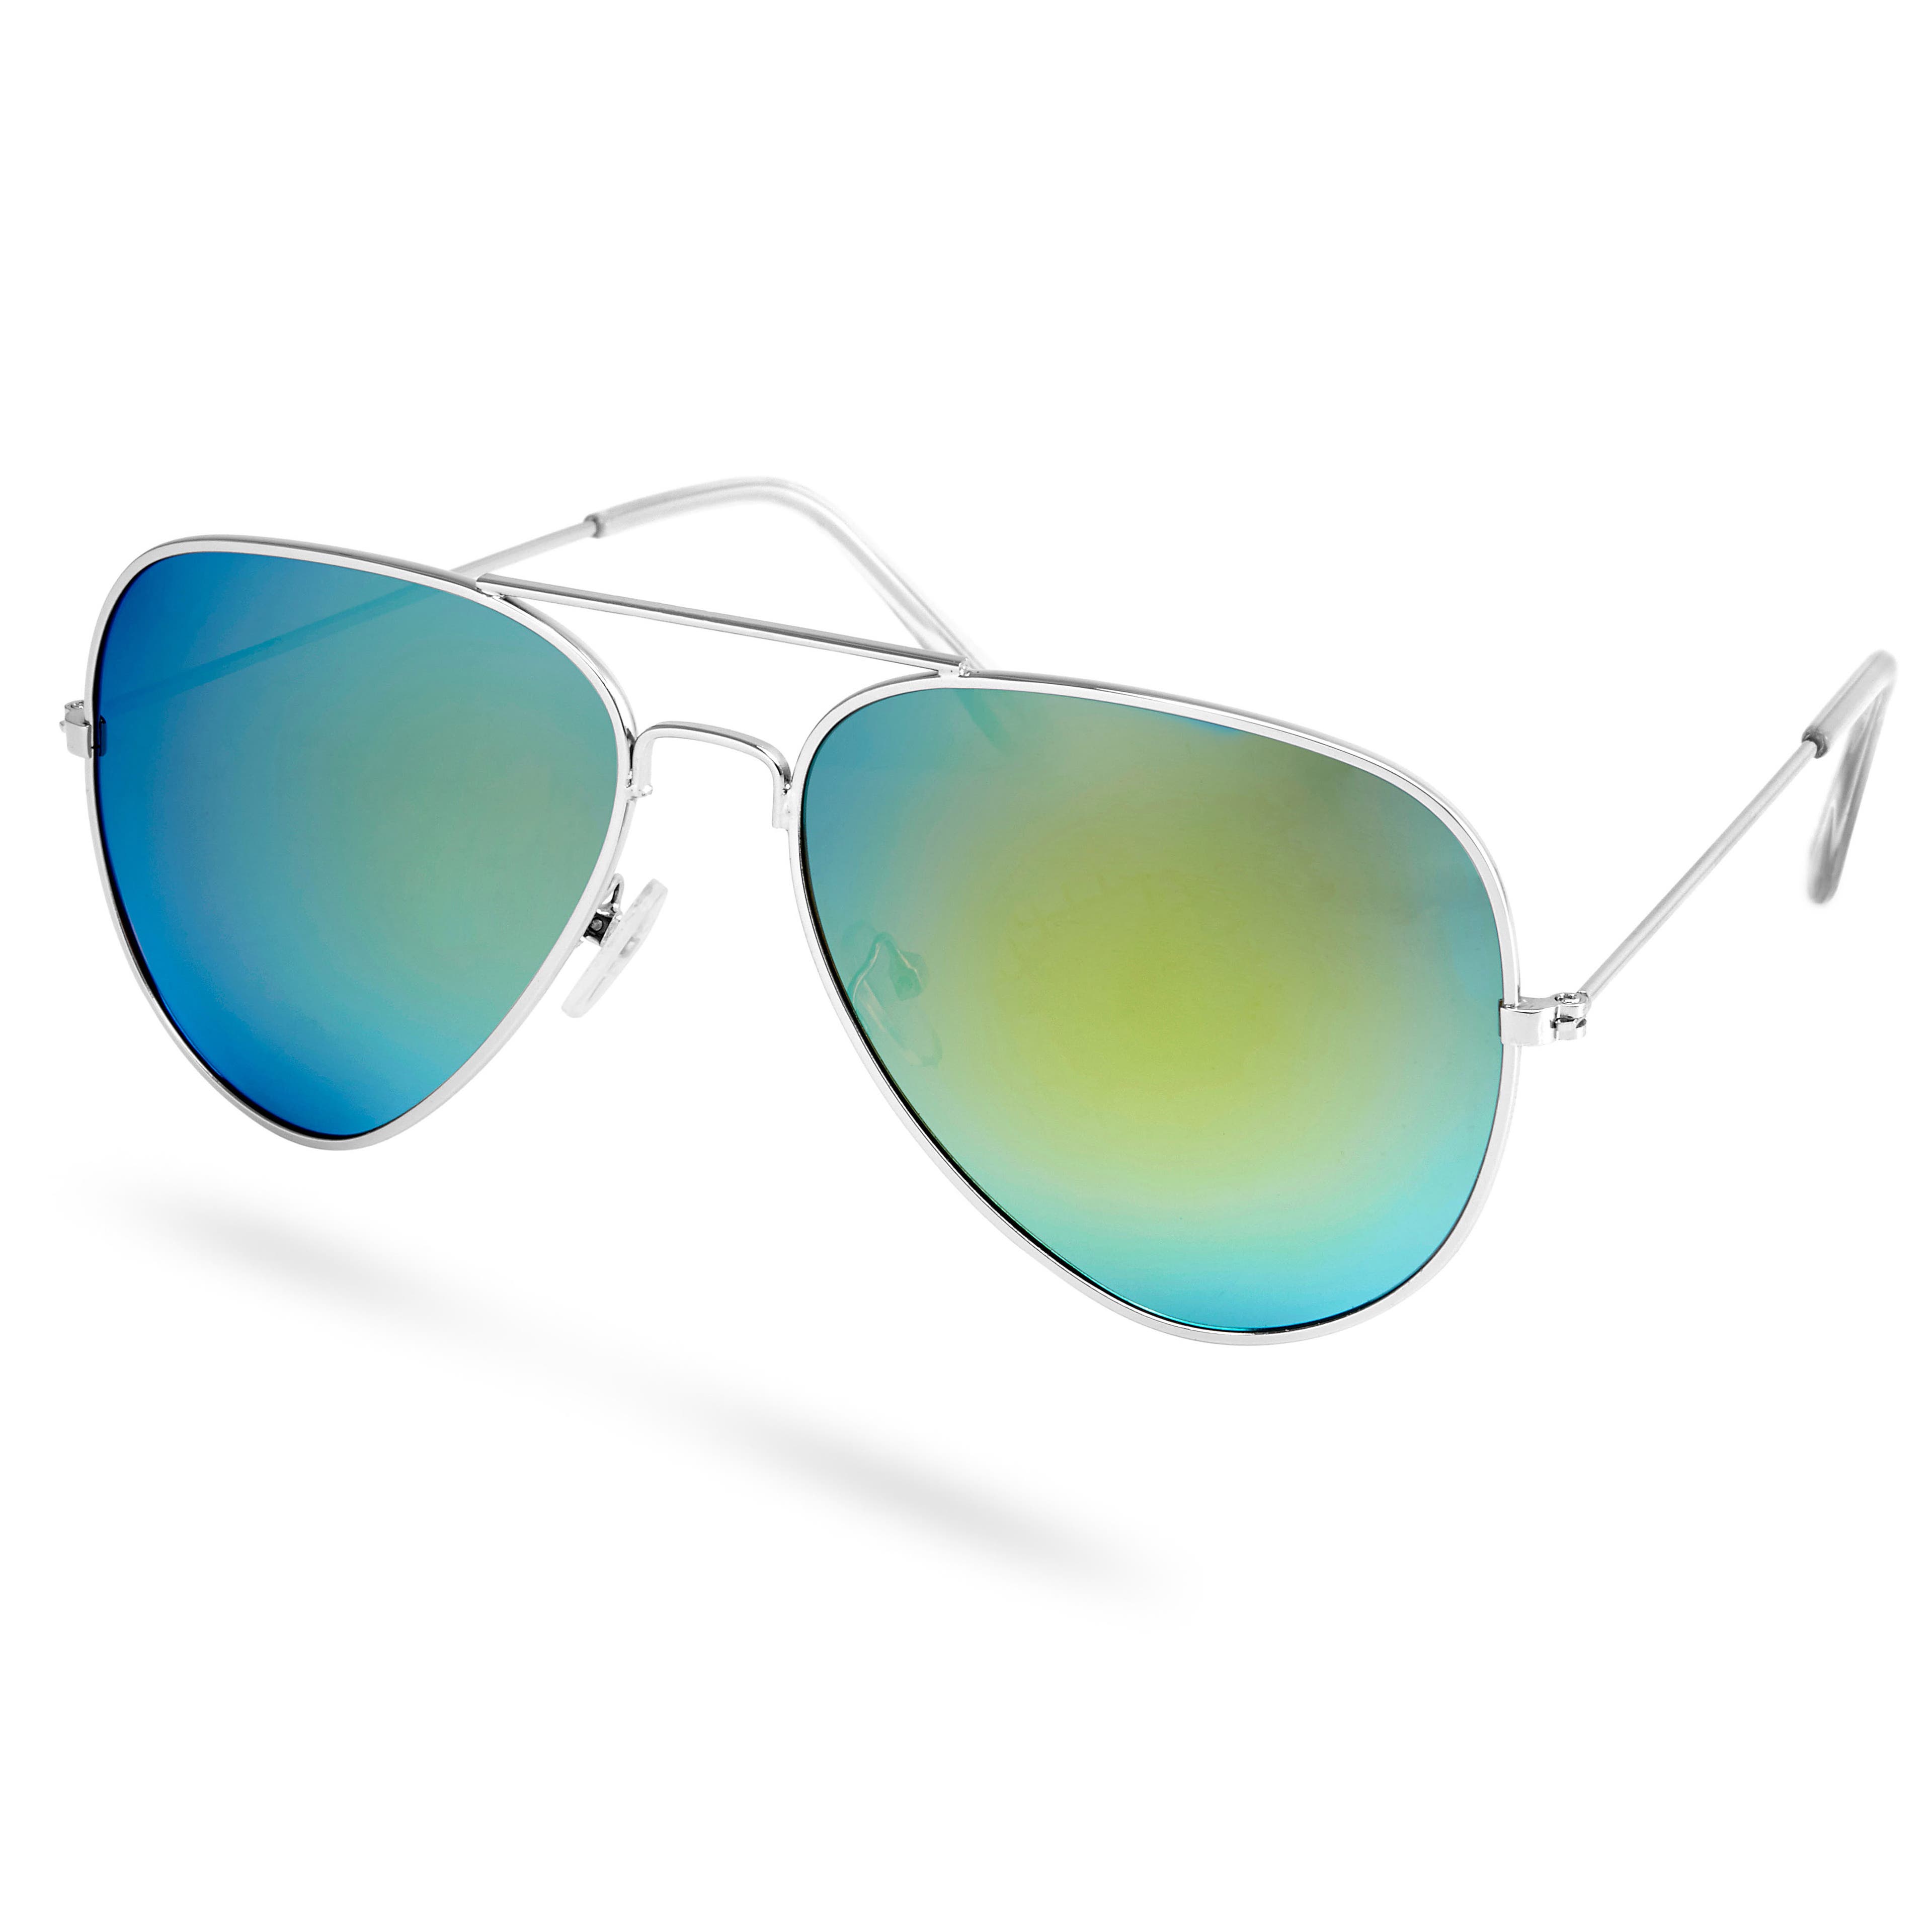 Ezüst tónusú és kék színű polarizált pilóta napszemüveg